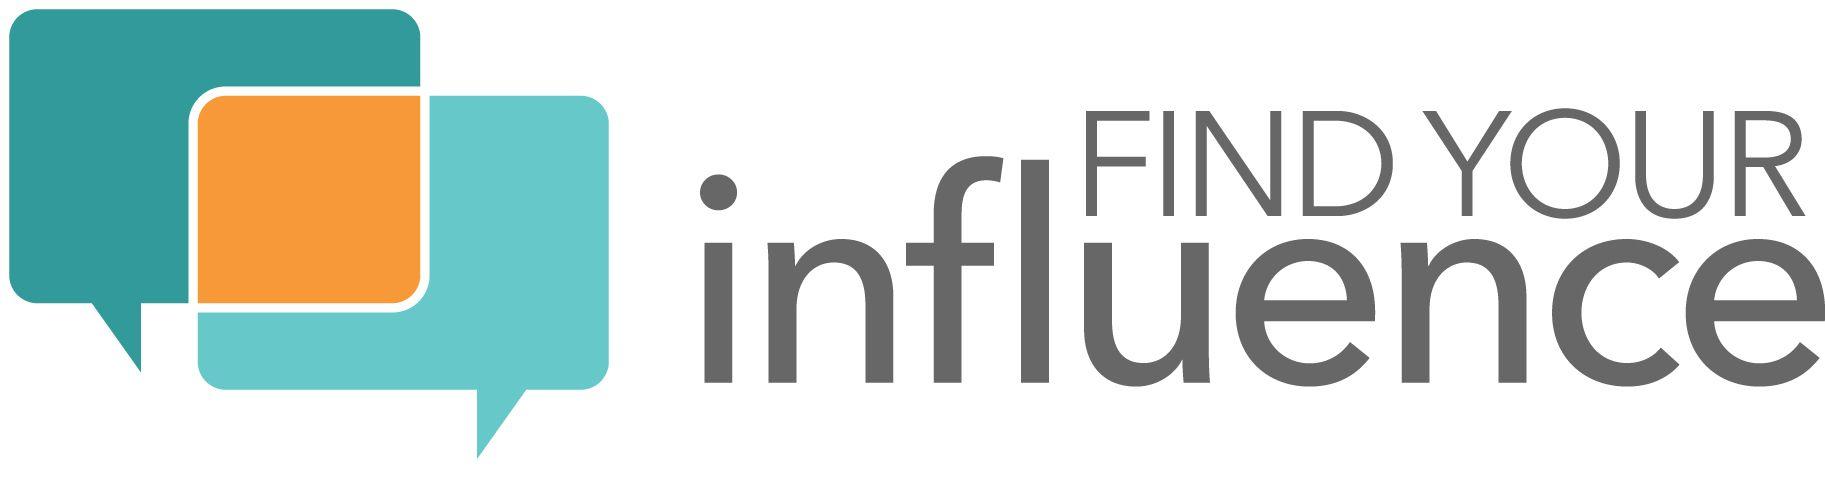 Influencer Logo - 10 Best Influencer Marketing Platforms to Find Influencers - DevTeam ...